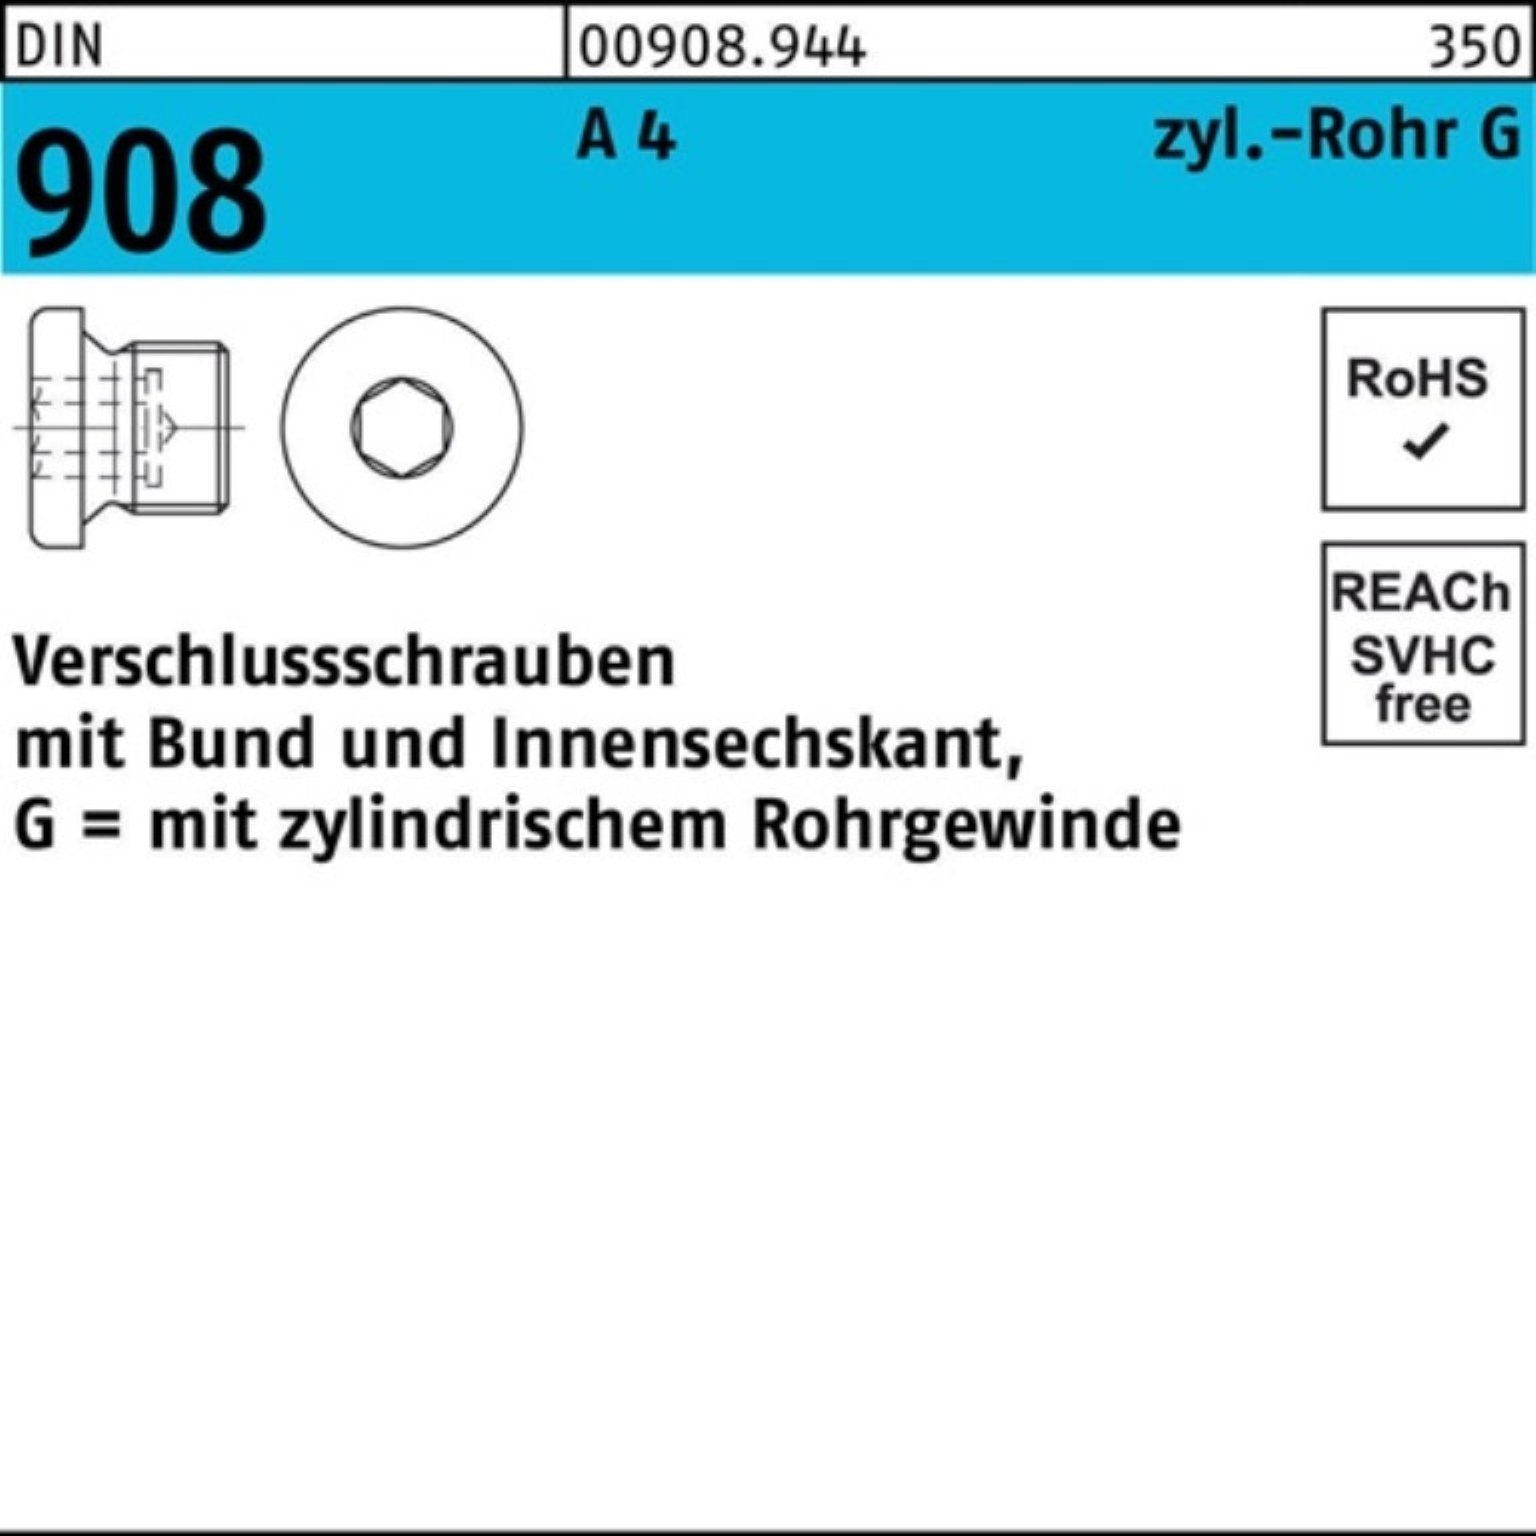 Reyher Schraube 100er Pack Verschlußschraube DIN 908 Bund/Innen-6kt G 1 1/4 A A 4 1 S | Schrauben